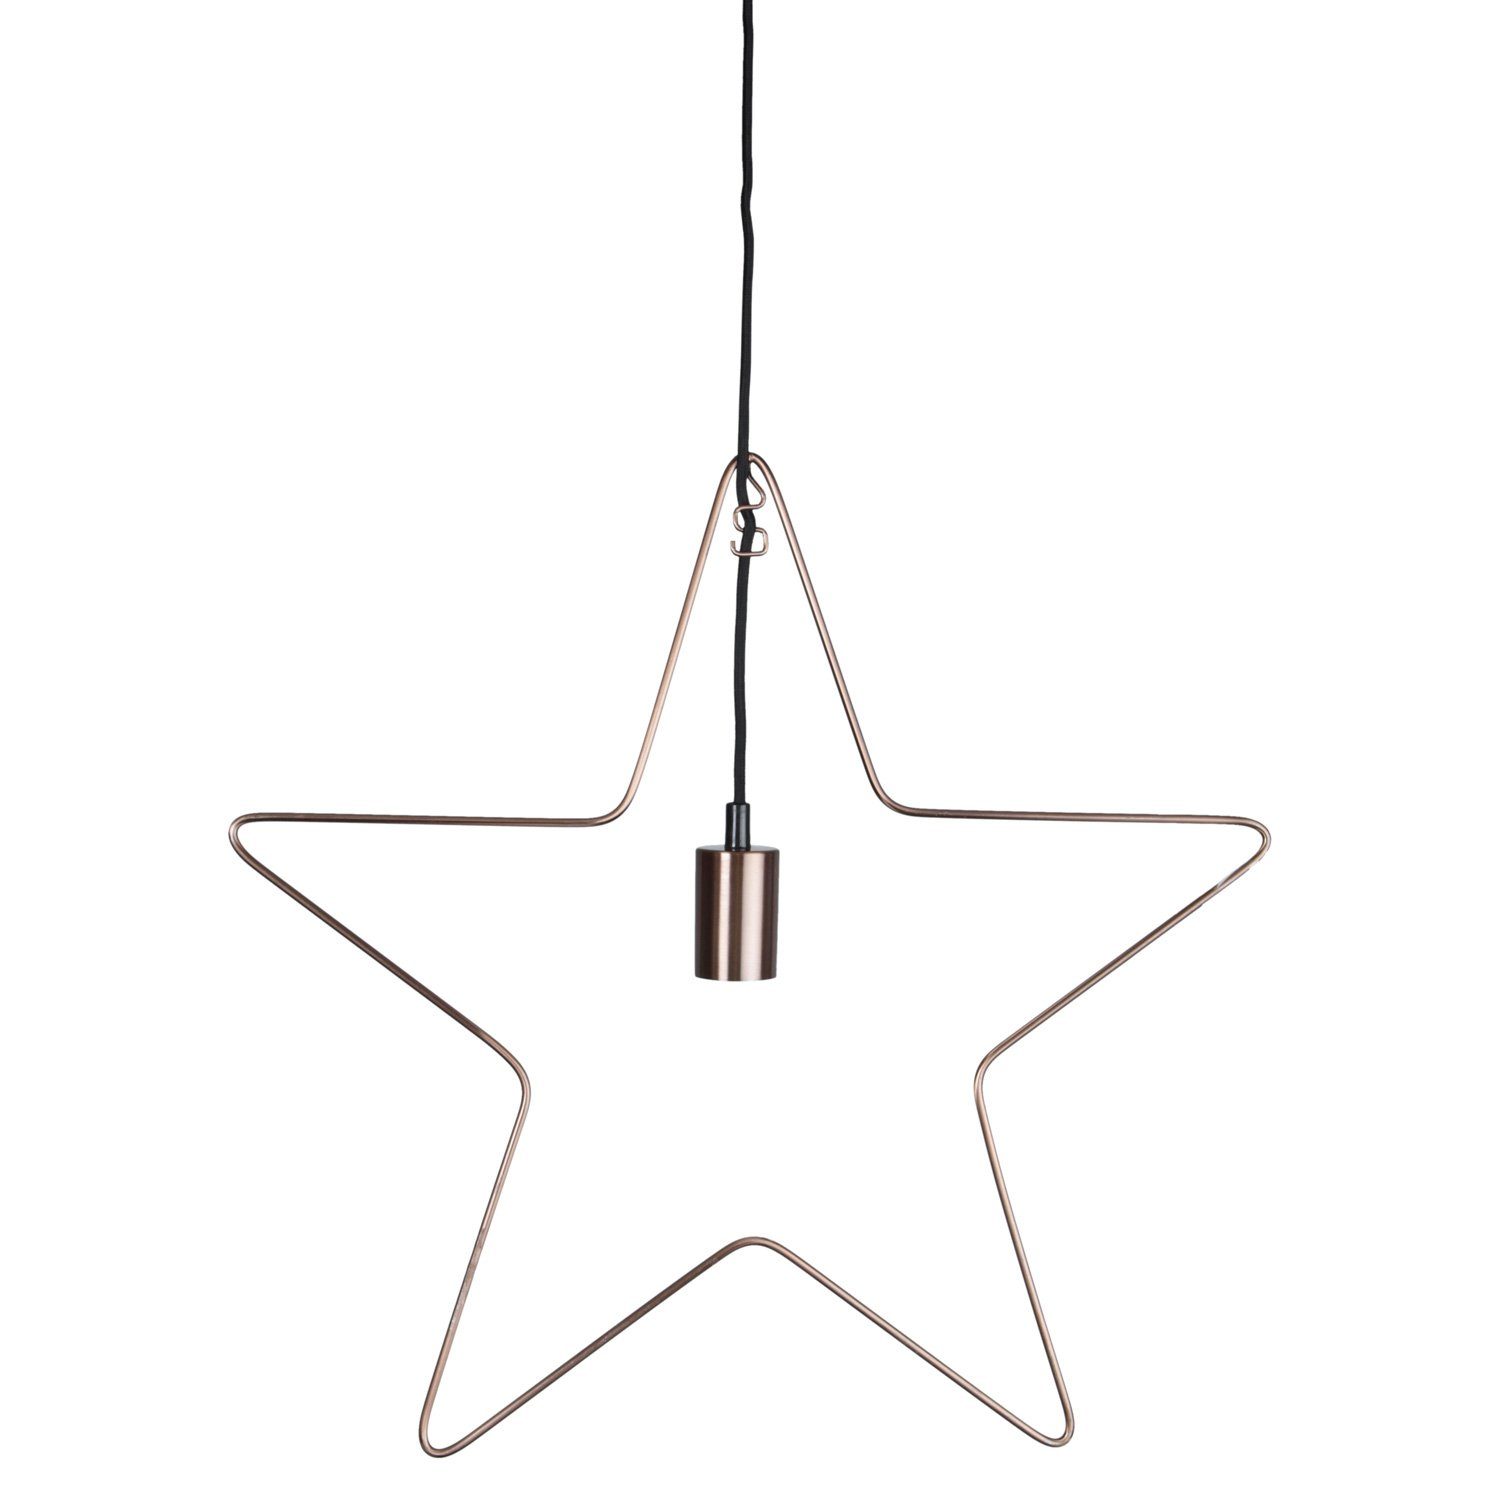 TRADING Stern STAR 50cm kupfer 5-zackig LED Lampenhalterung Hängestern E27 Stern Dekoleuchte